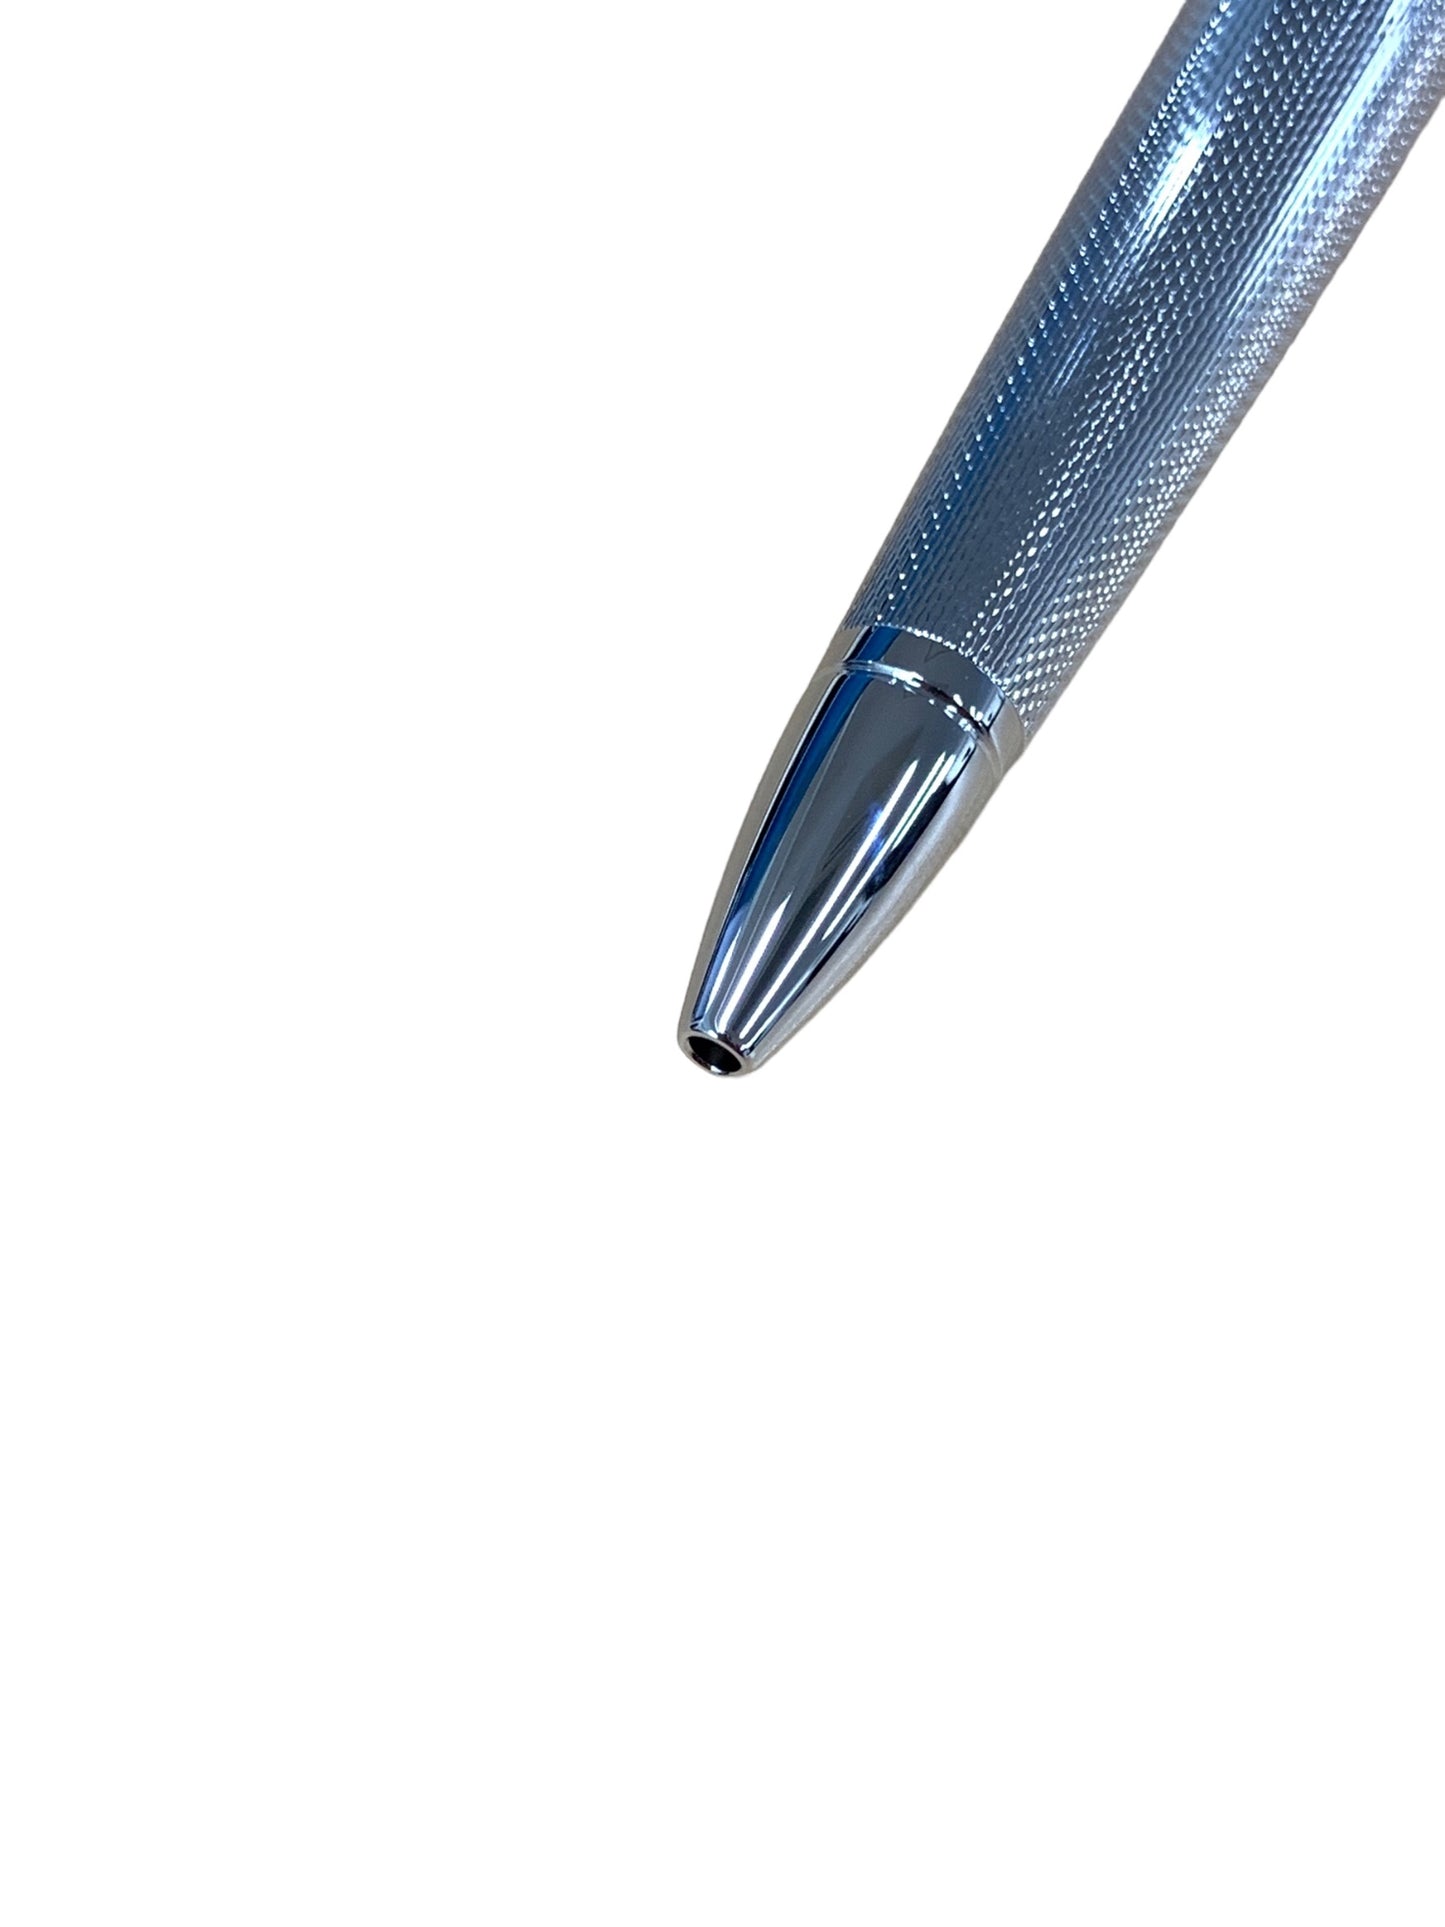 クロス アポジー AT0122-1 ボールペン シルバー クロームプレート ITRG5R5DPSB3